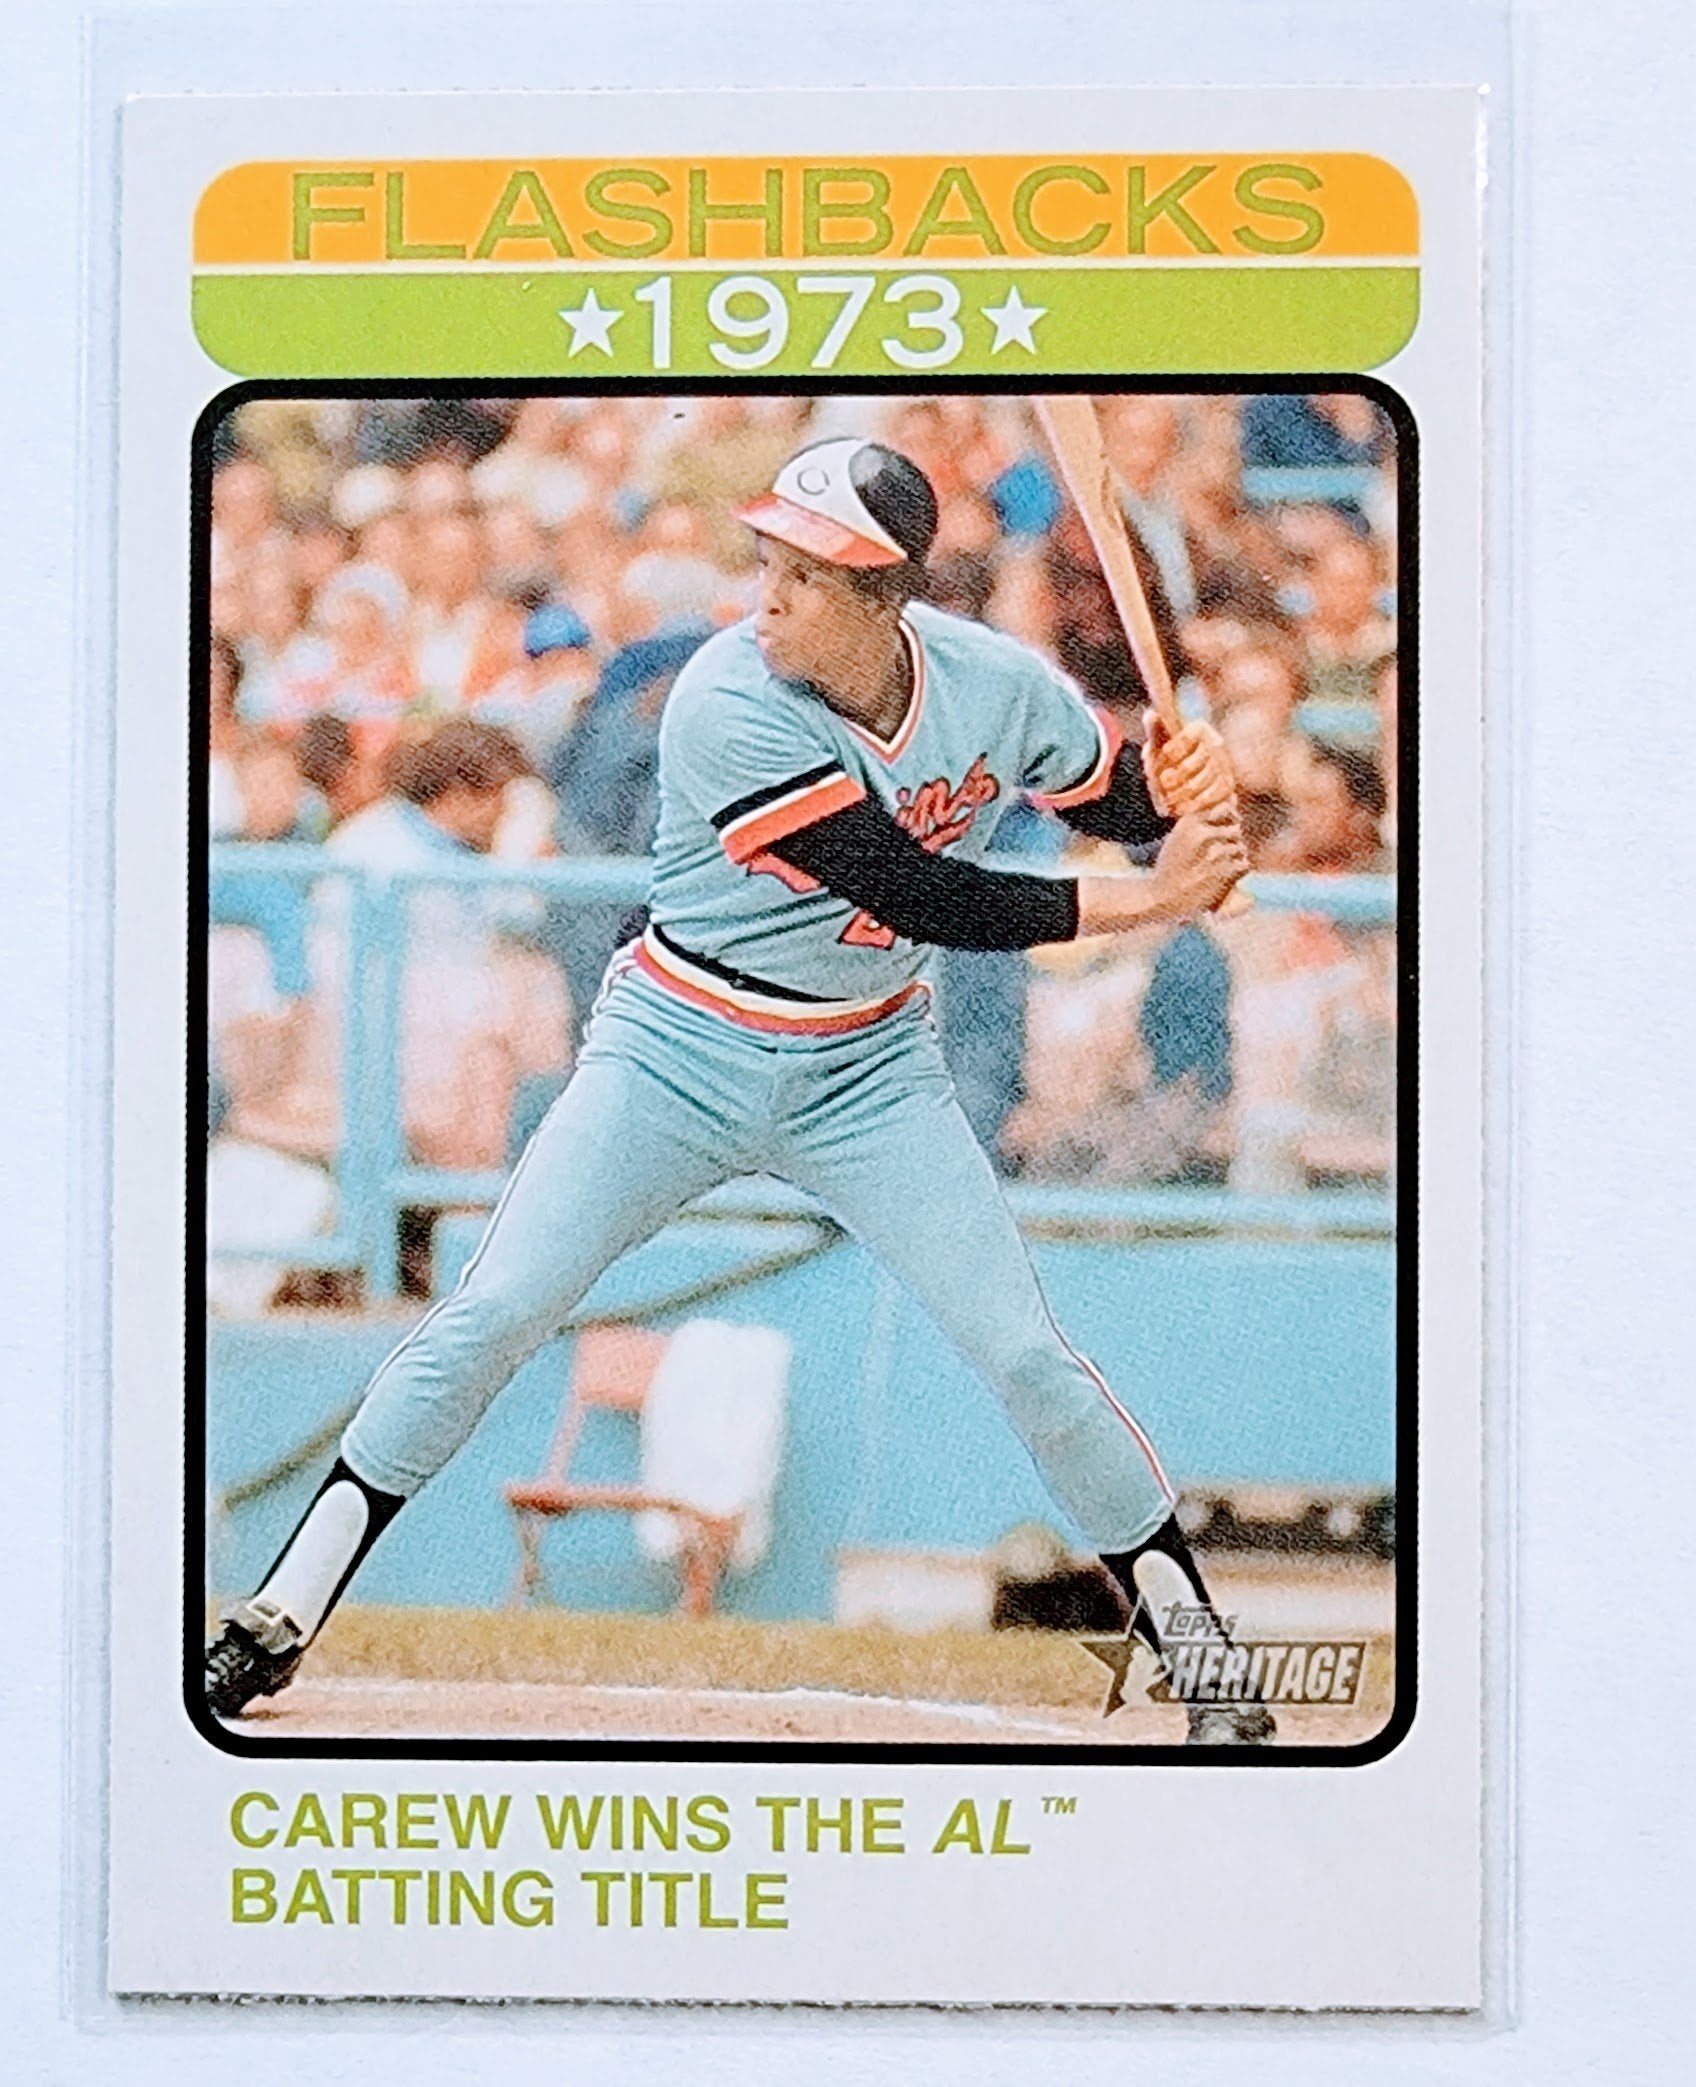 2022 Topps Heritage Rod Carew 1973 Flashbacks Insert Baseball Card AVM